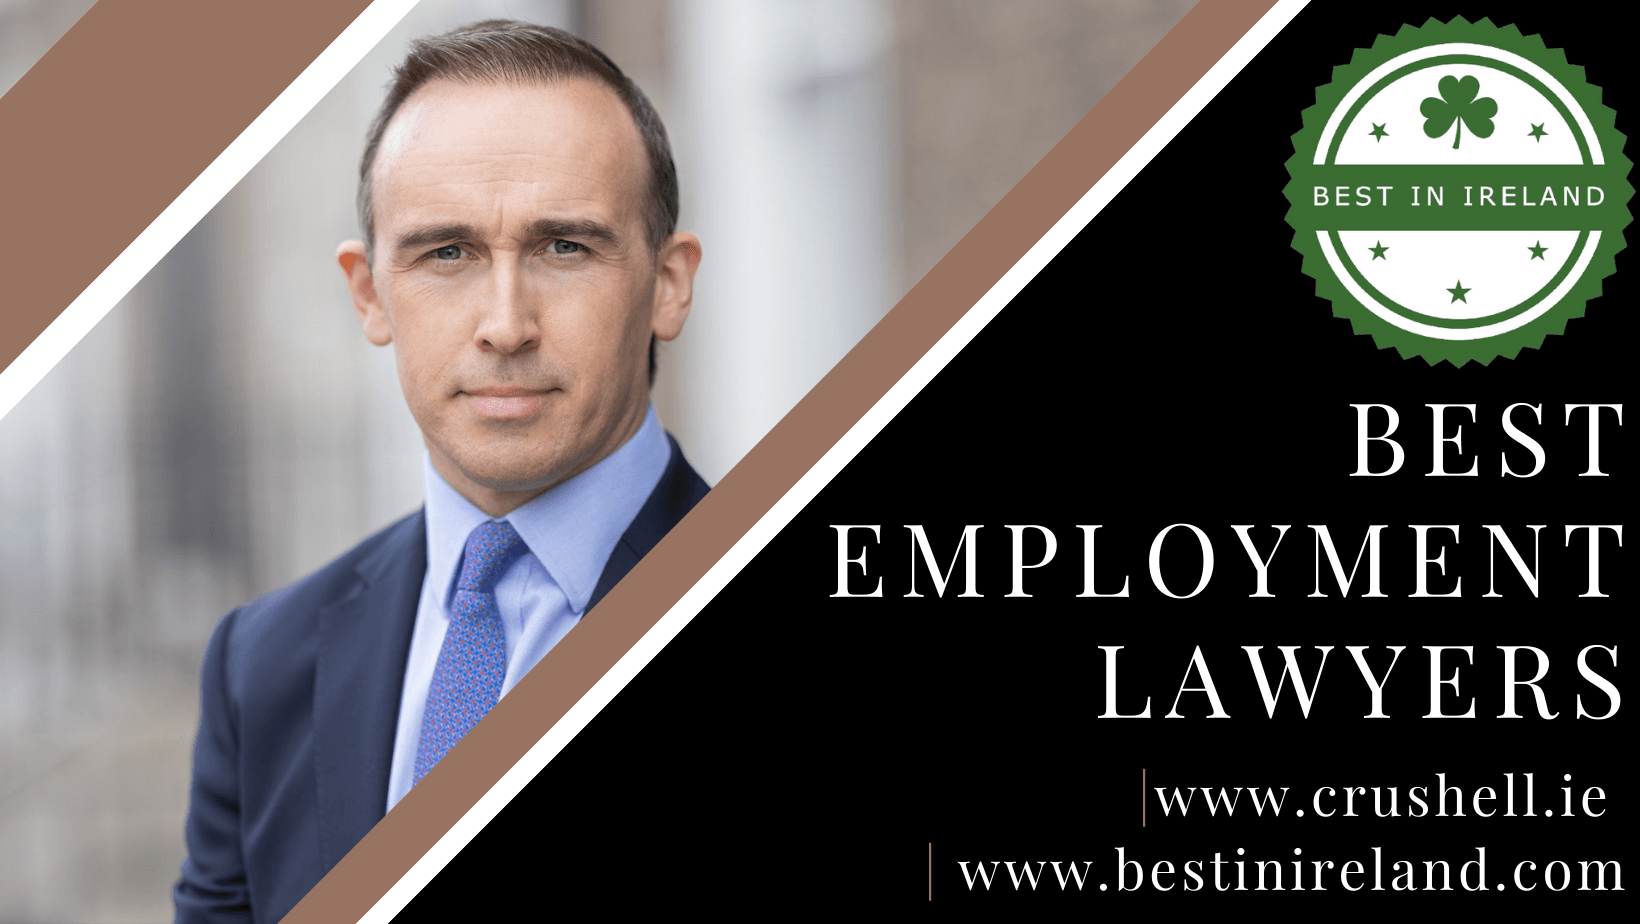 Best Employment Lawyer in Ireland